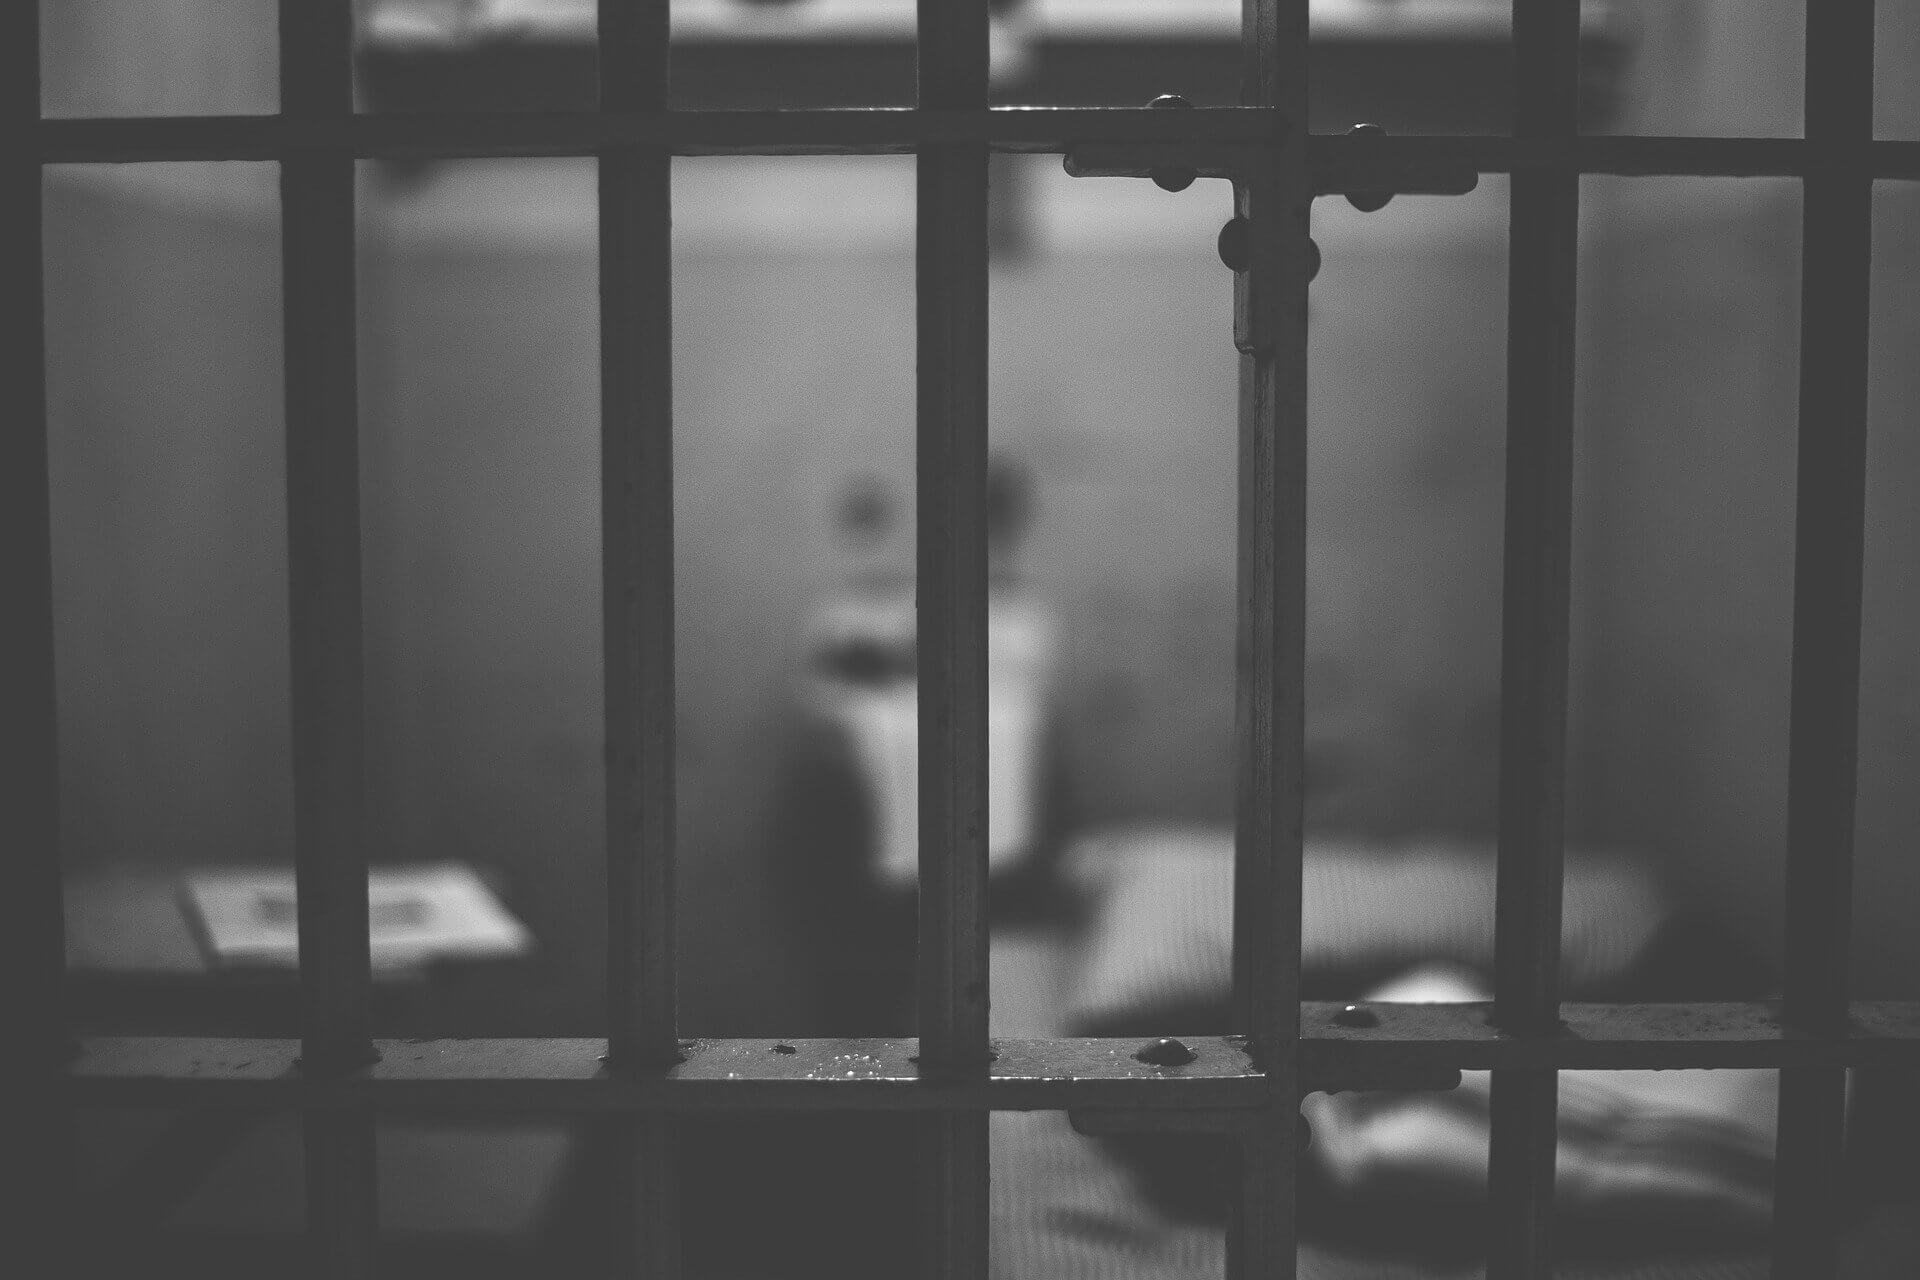 Φλωρίδης: Κοινωφελής εργασία αντί για φυλακή για ποινές έως 2 έτη – Βραχιολάκι αντί περιοριστικών μέτρων